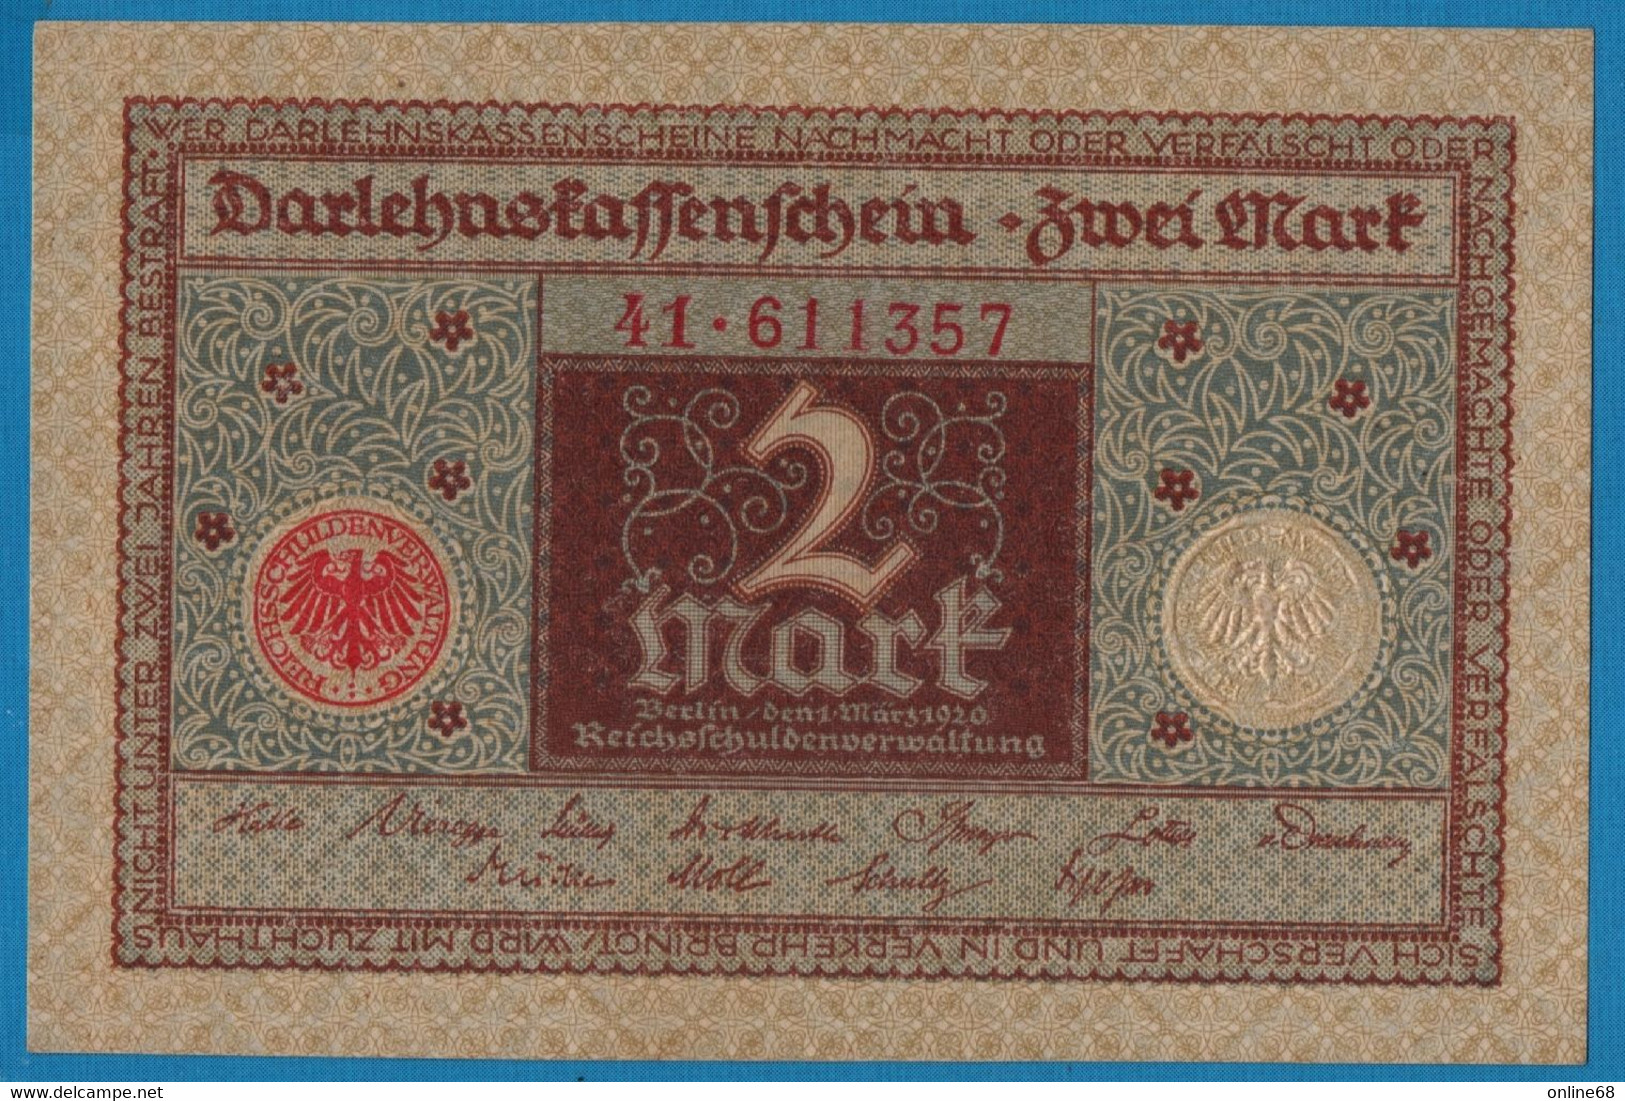 DEUTSCHES REICH 2 MARK 01.03.1920  # 41.611357 P# 60  DARLEHENSKASSENSCHEIN - Imperial Debt Administration